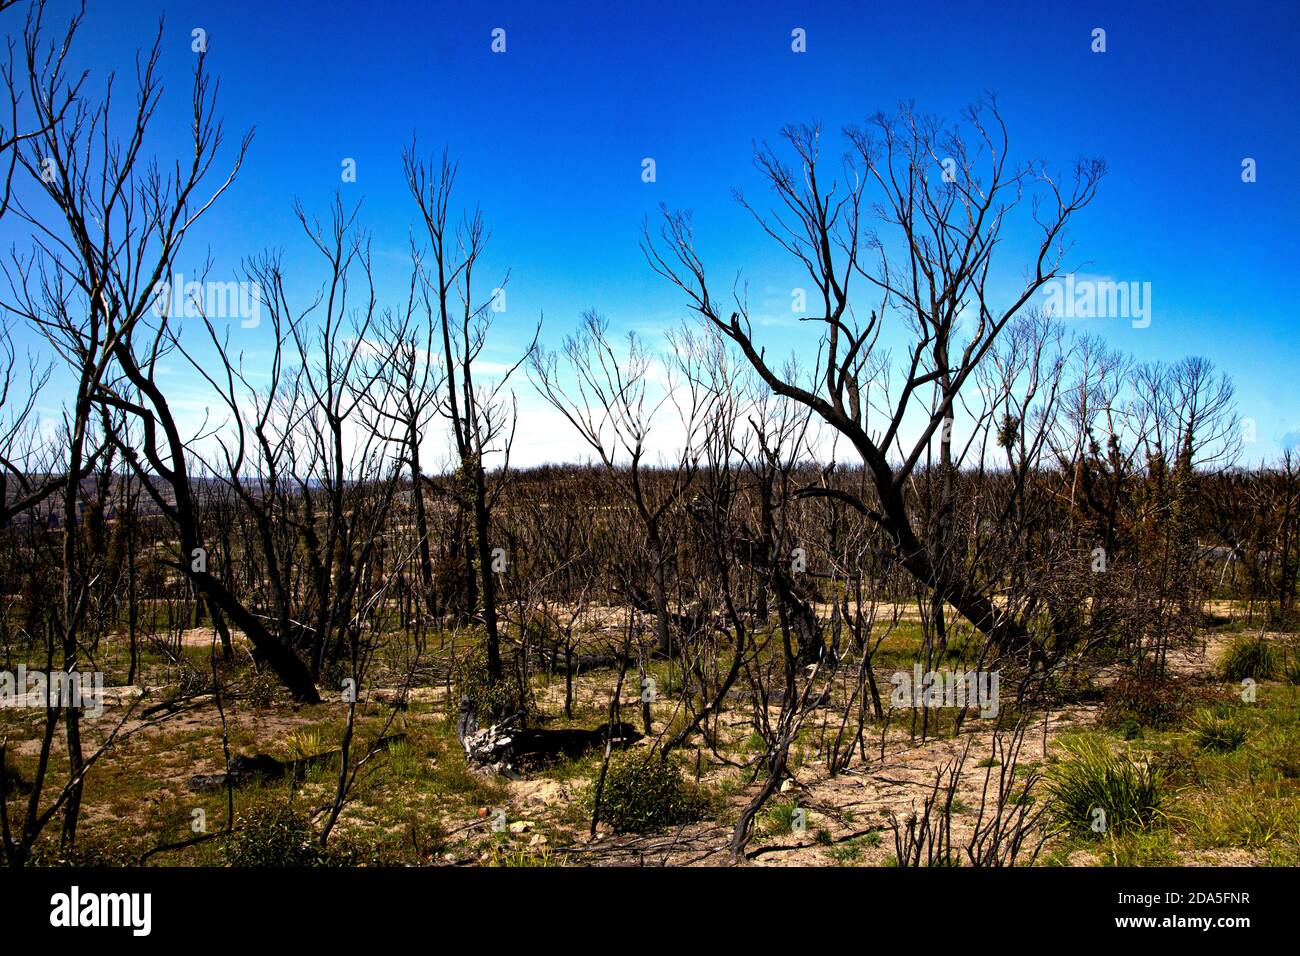 Le paysage brut montre des arbres détruits par les récents feux de brousse dans le sud de la Nouvelle-Galles du Sud, pendant les mois d'été australiens Banque D'Images